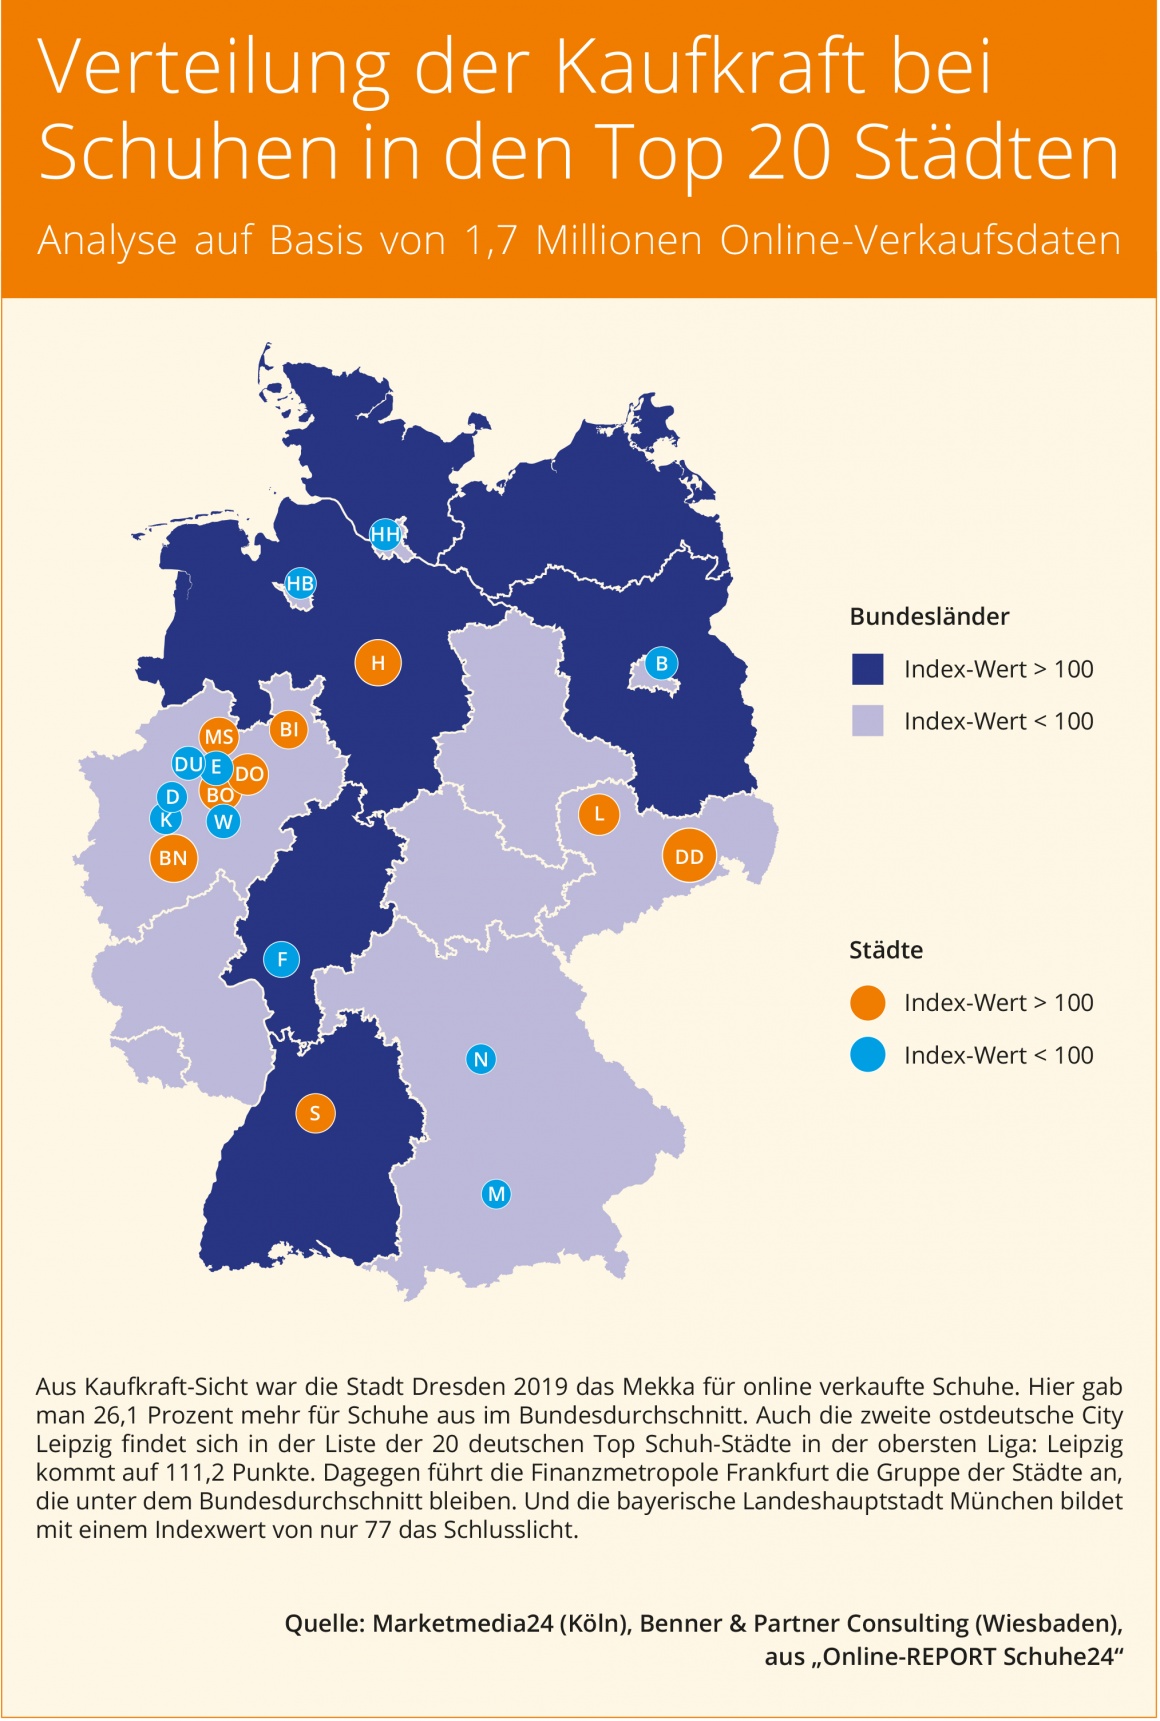 Deutschlandkarte mit verschiedenen Farben und Punkten...